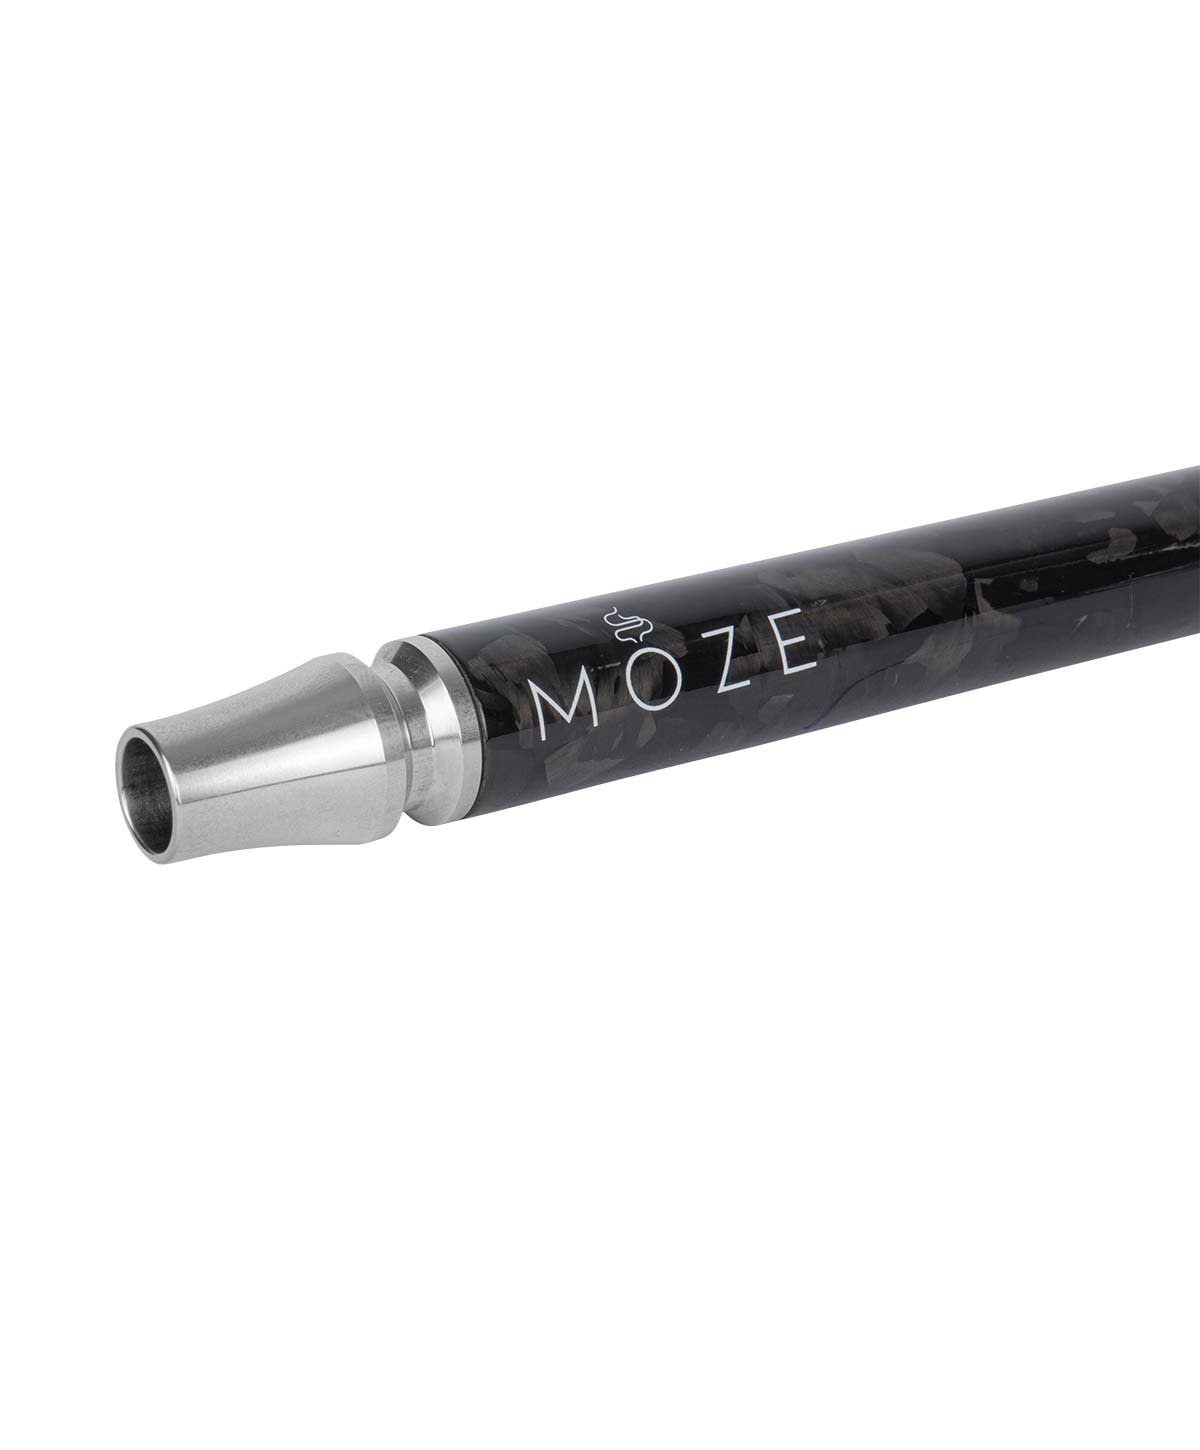 Moze +Line Mouthpiece Extension - Forged Carbon